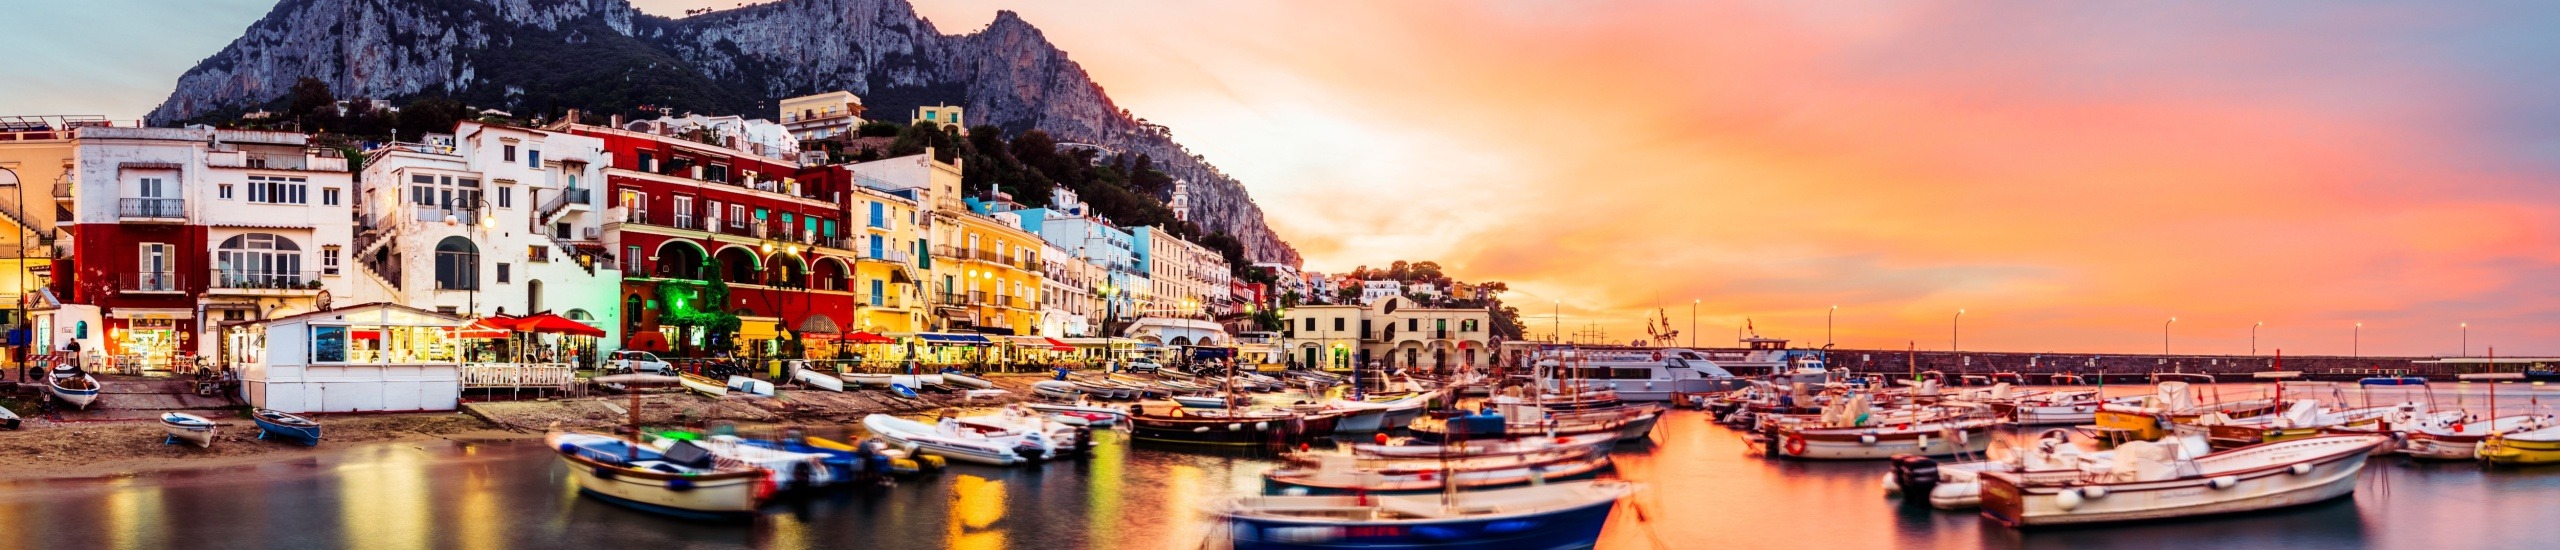 Quanti giorni occorrono per visitare Capri?